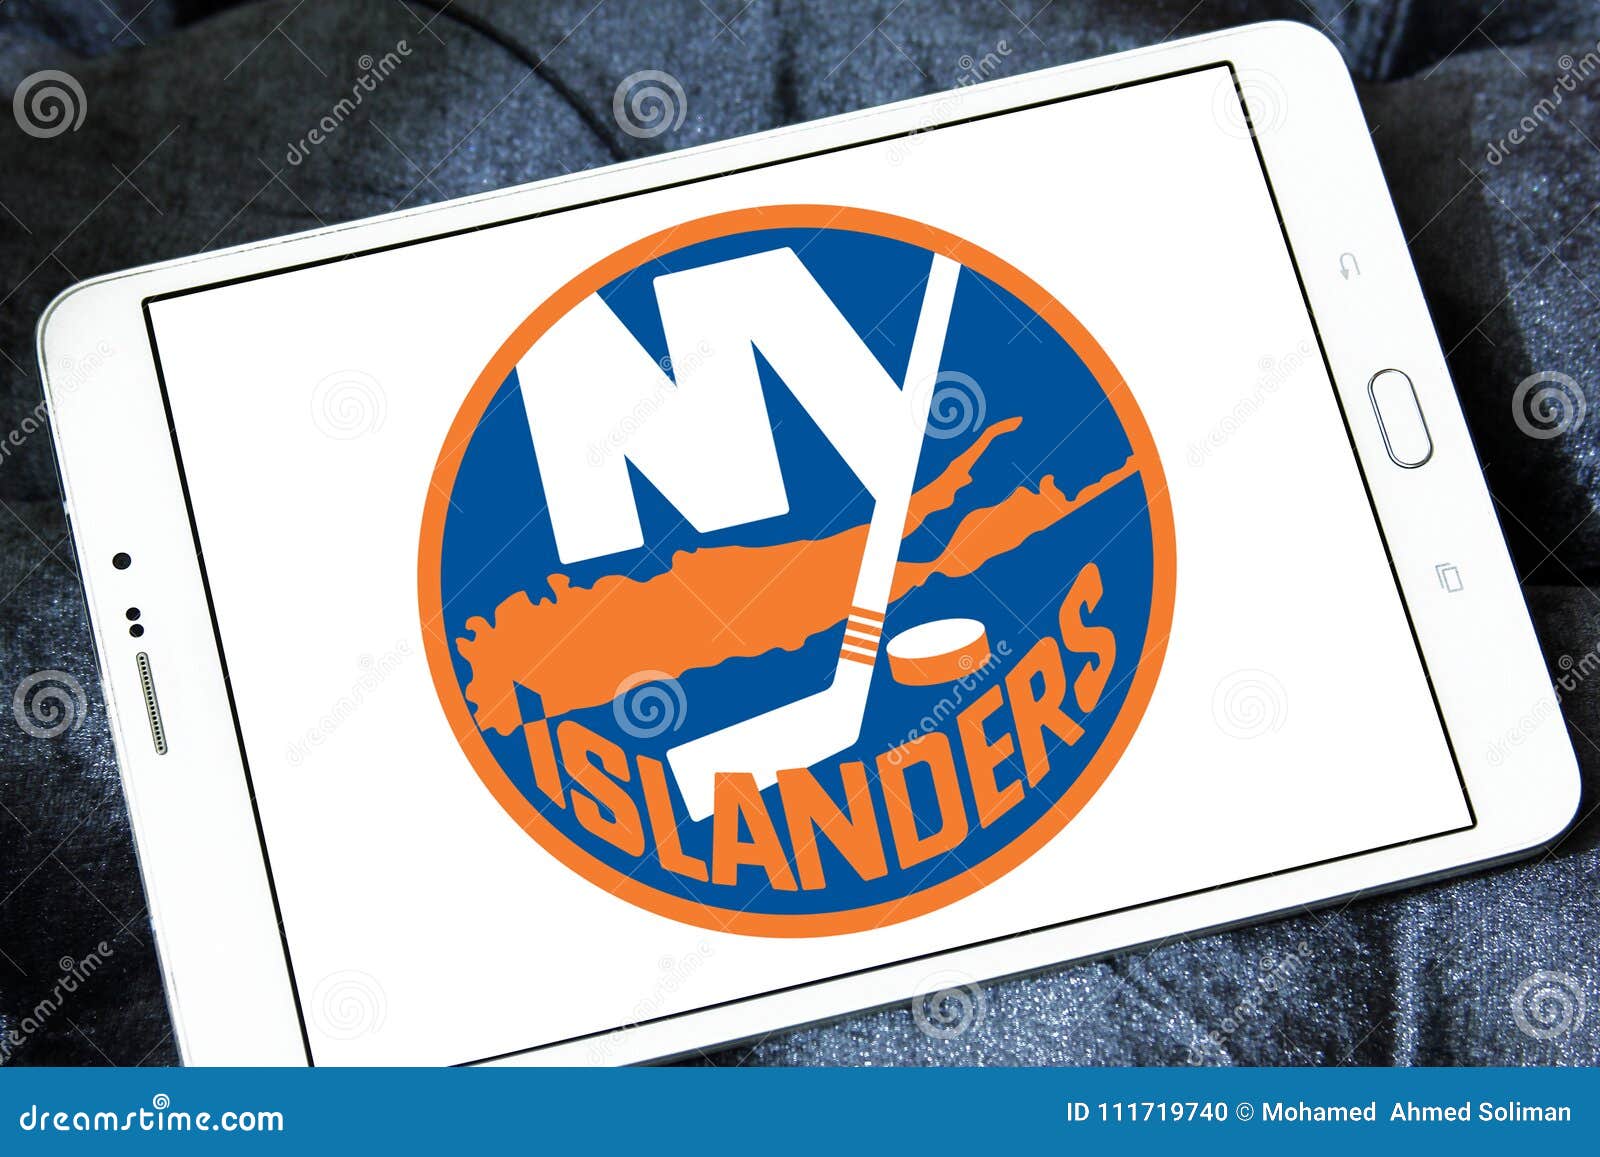 New York Islanders Wallpaper APK voor Android Download